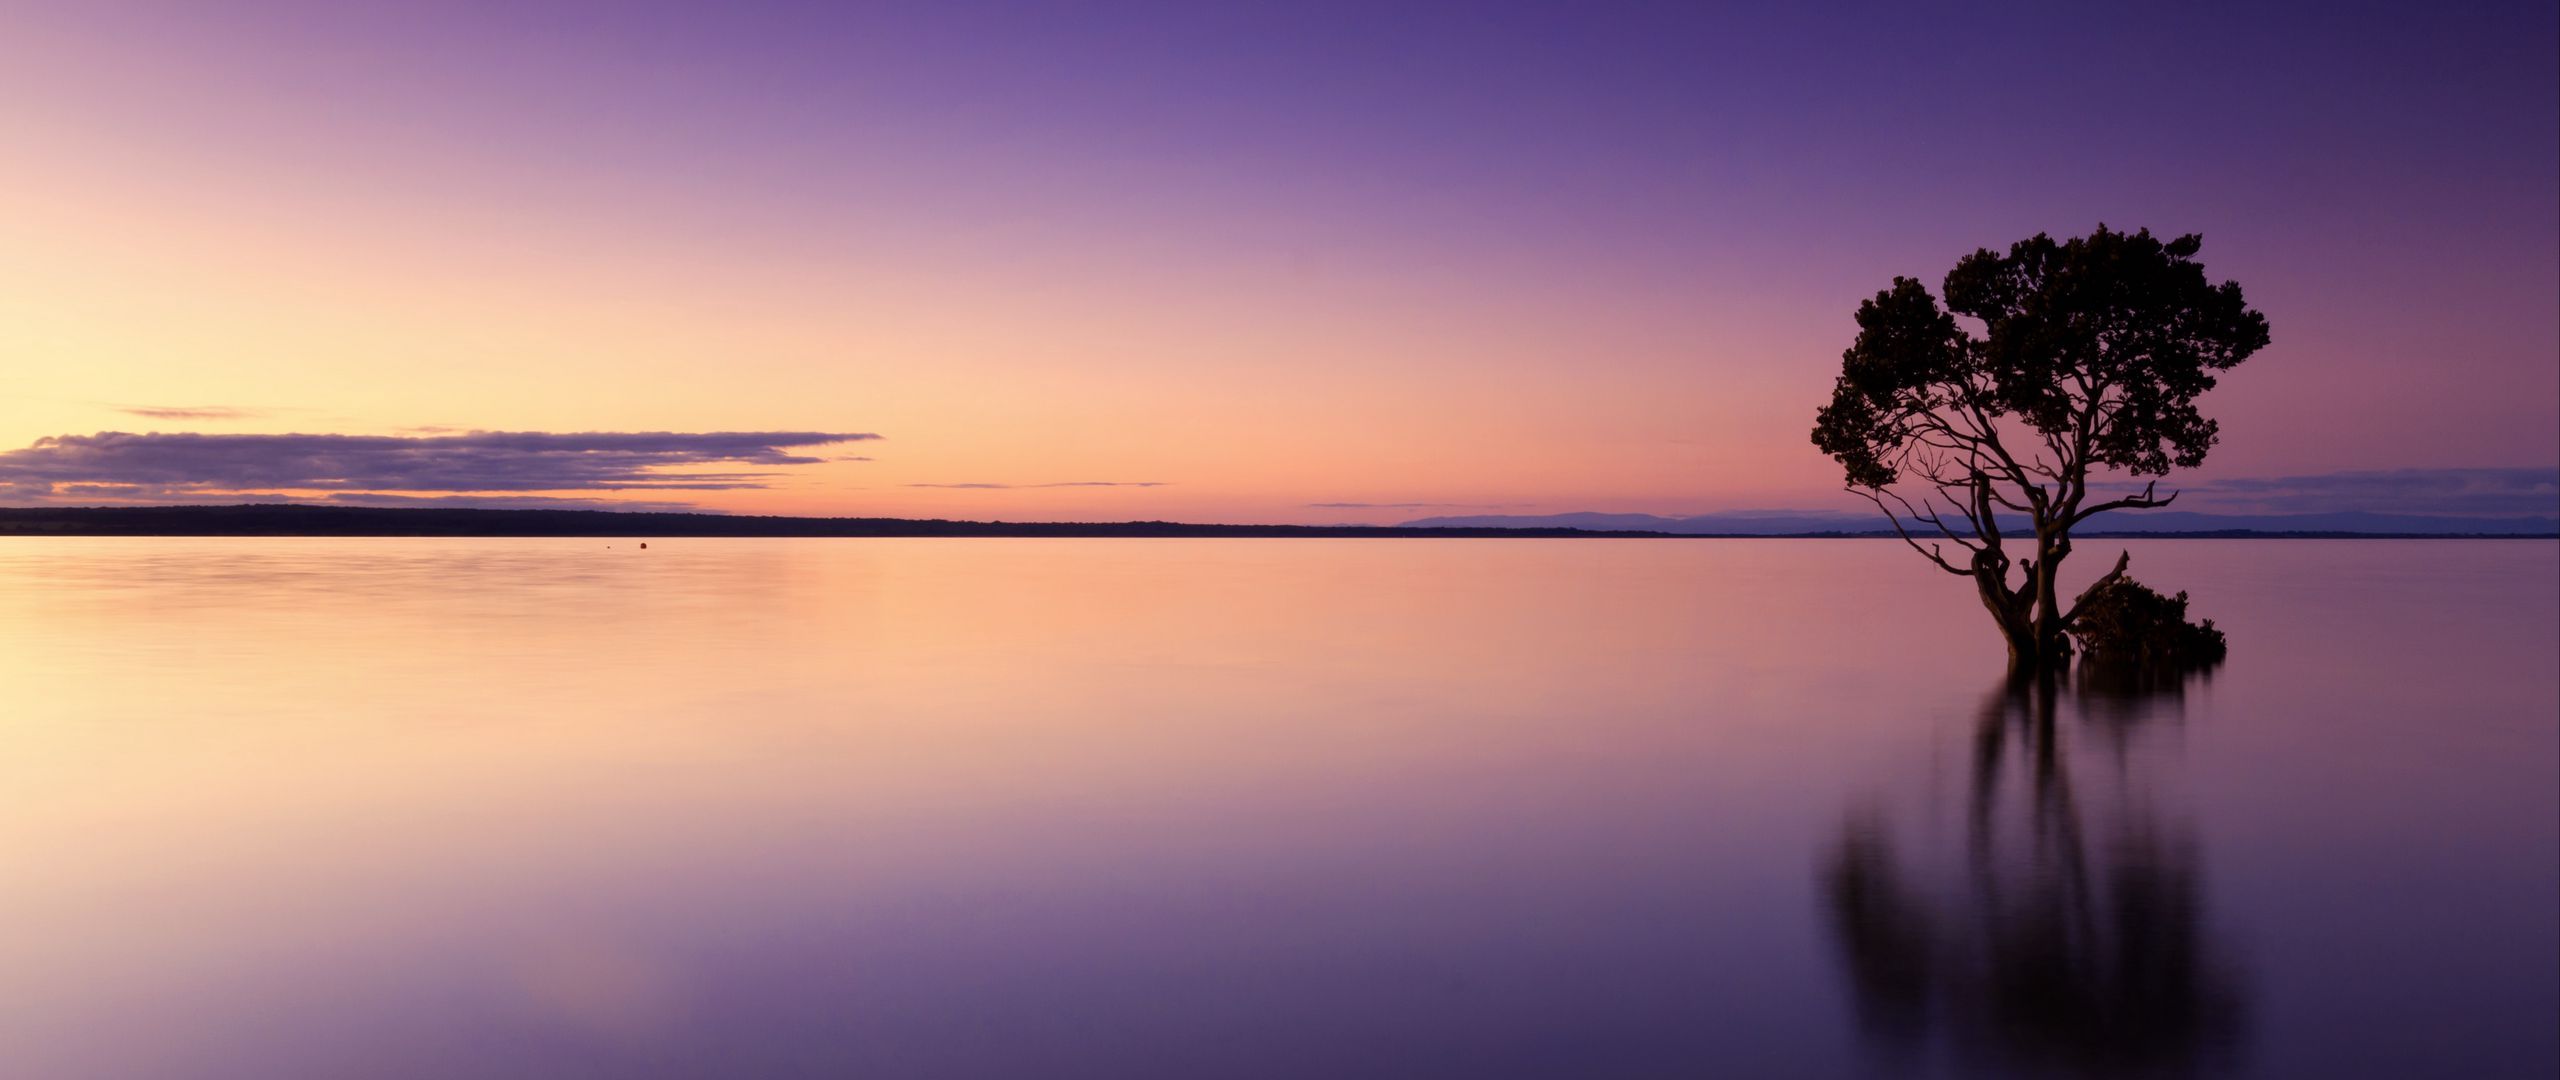 Download wallpaper 2560x1080 sunset, tree, lake, sky, water